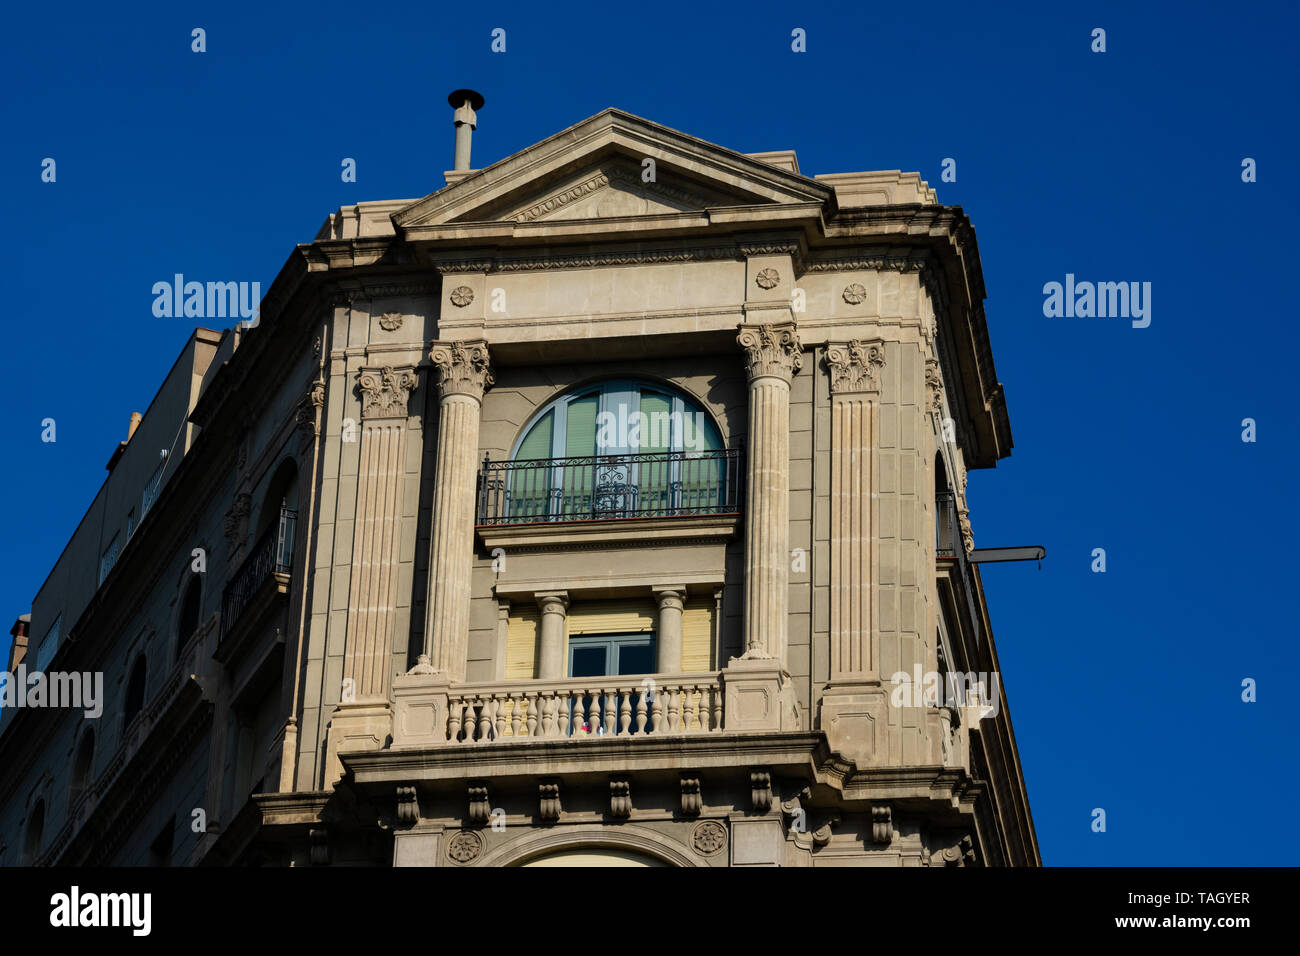 Barcelona, España. El 9 de febrero de 2019. Antiguo edificio de fachada y balcones. Avenida Diagonal Foto de stock